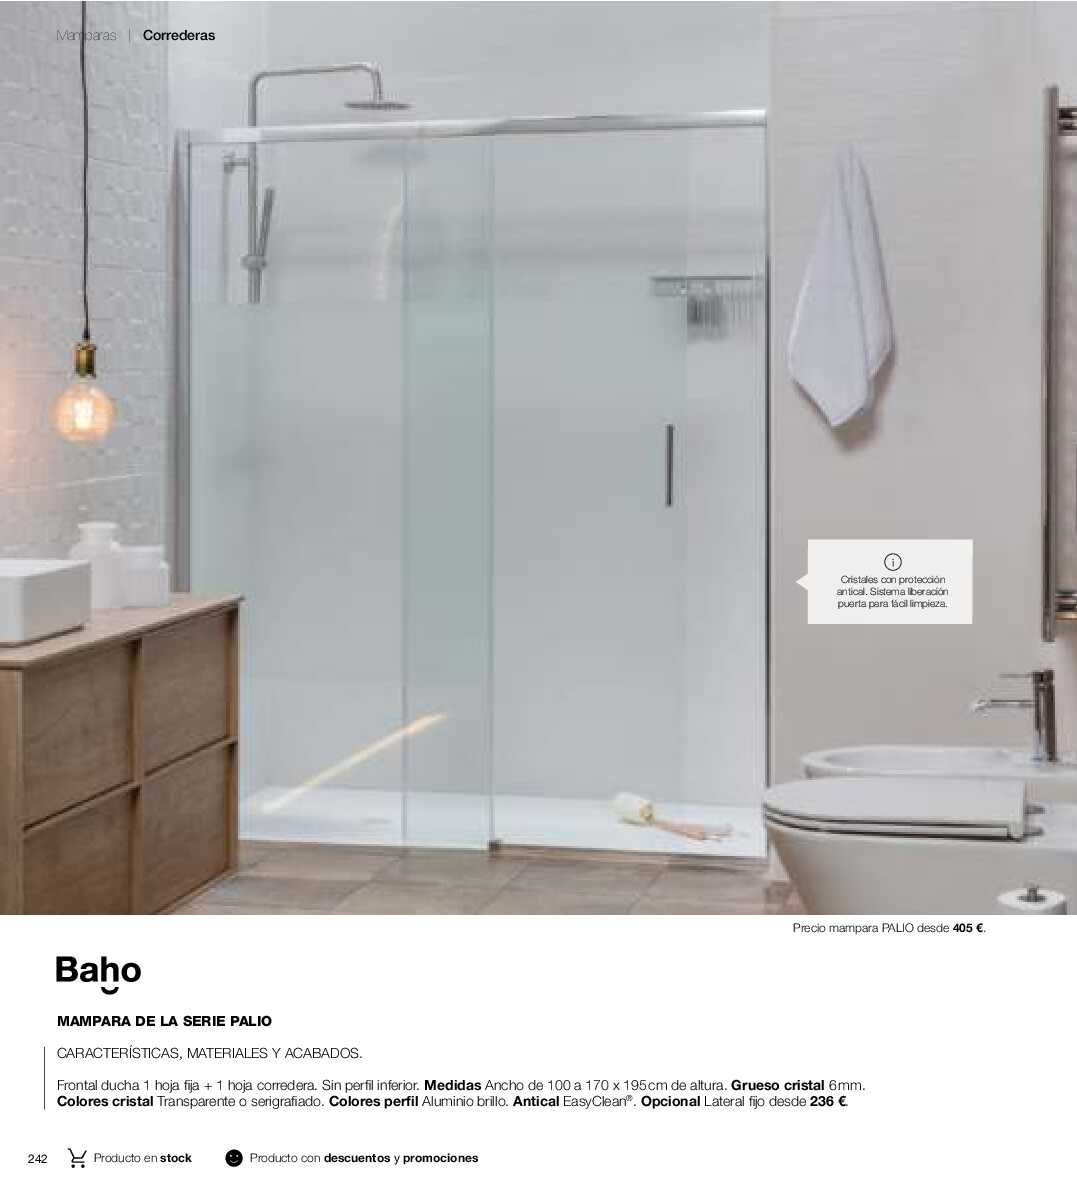 Catálogo de baños Gamma. Página 241